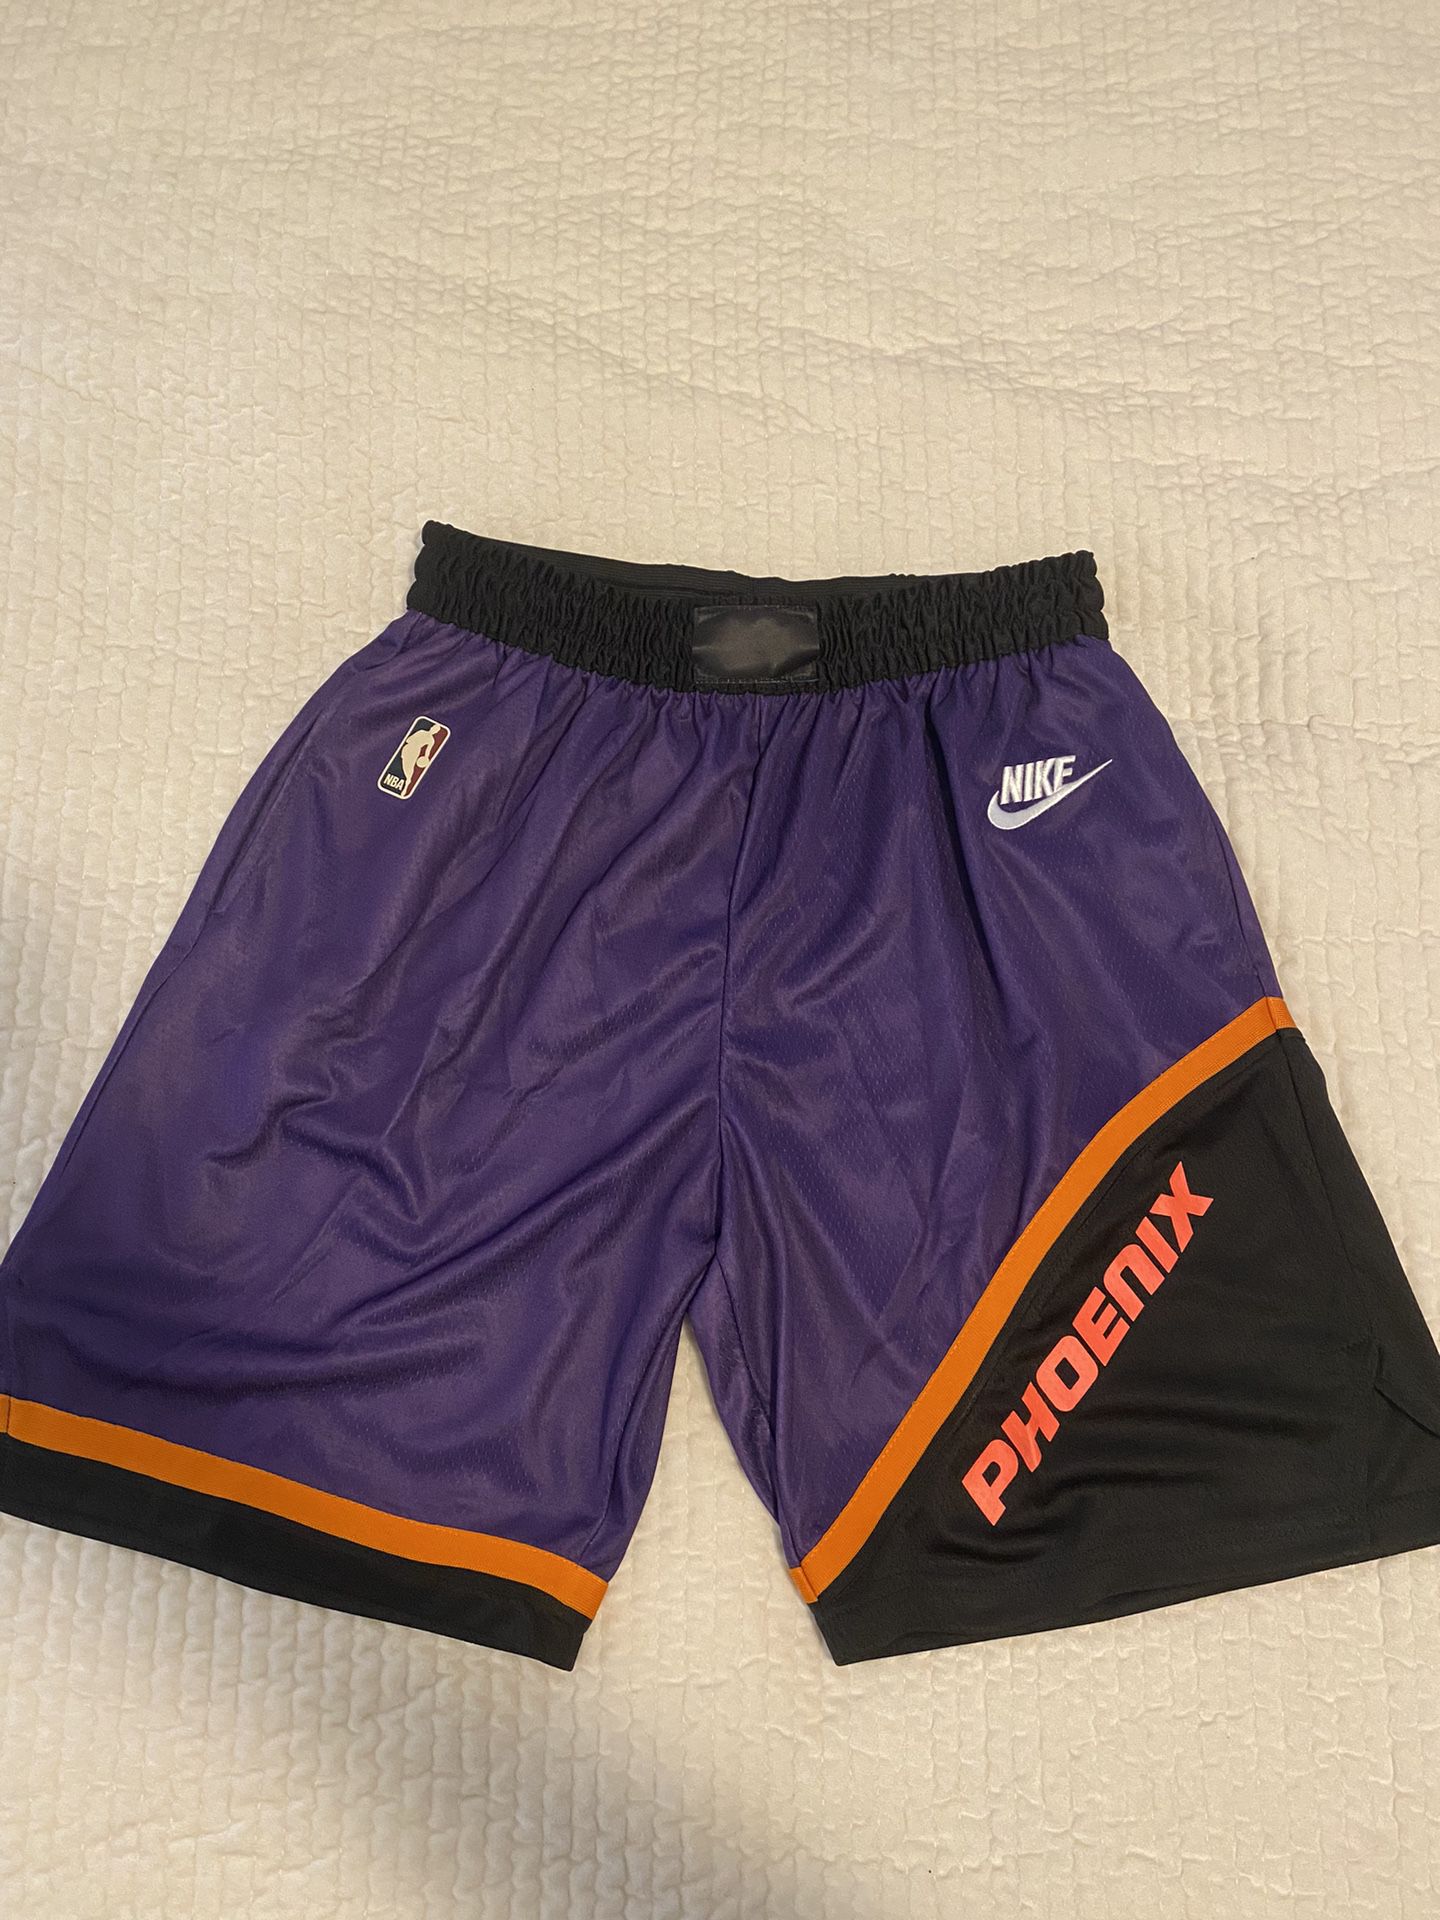 Retro Memphis Grizzlies Shorts for Sale in Phoenix, AZ - OfferUp